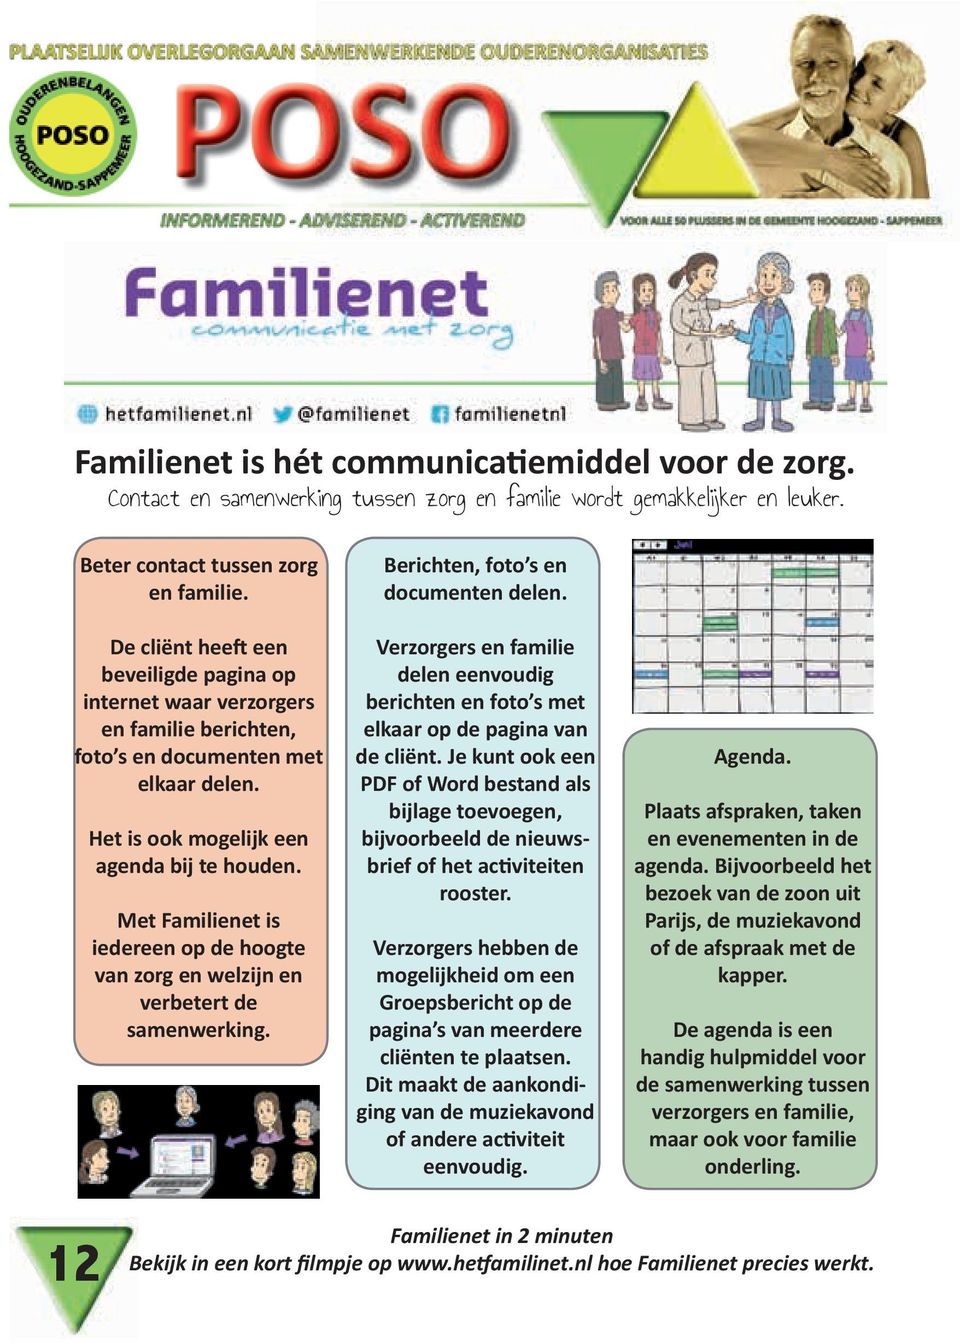 Met Familienet is iedereen op de hoogte van zorg en welzijn en verbetert de samenwerking. Berichten, foto s en documenten delen.